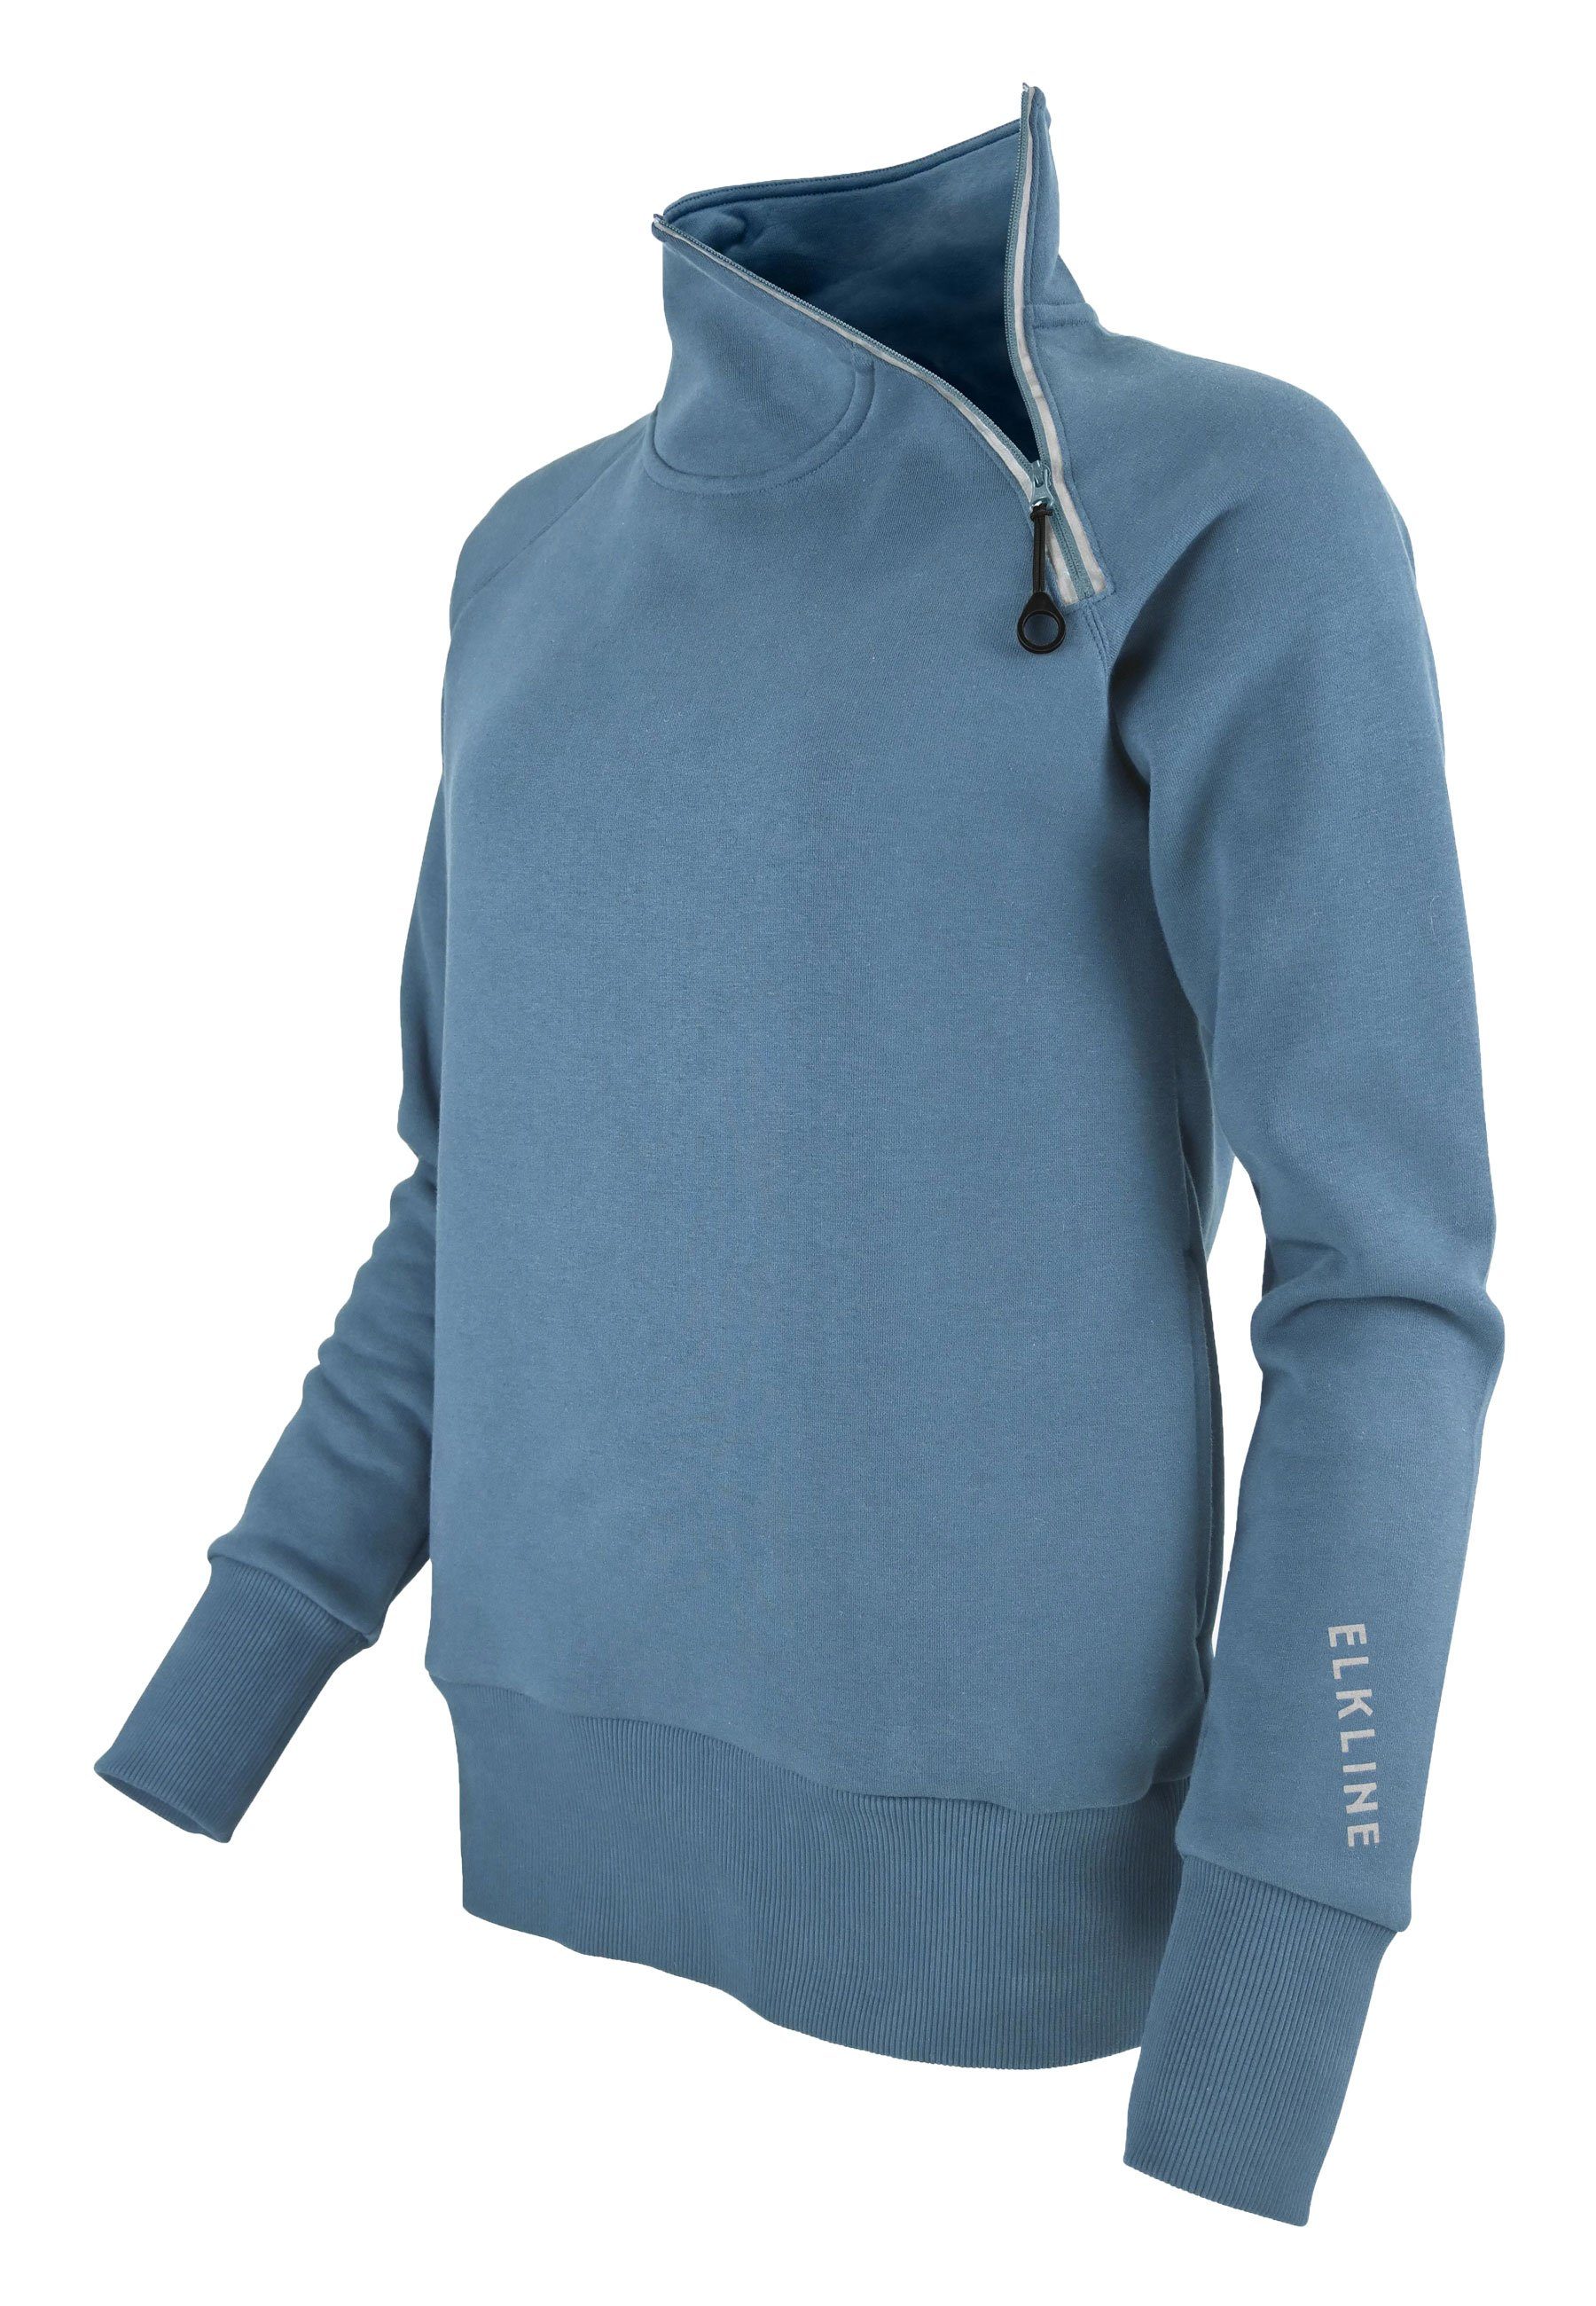 Elkline Sweatshirt Performance Stehkragen ashblue und mit Seitentaschen Reißverschluss